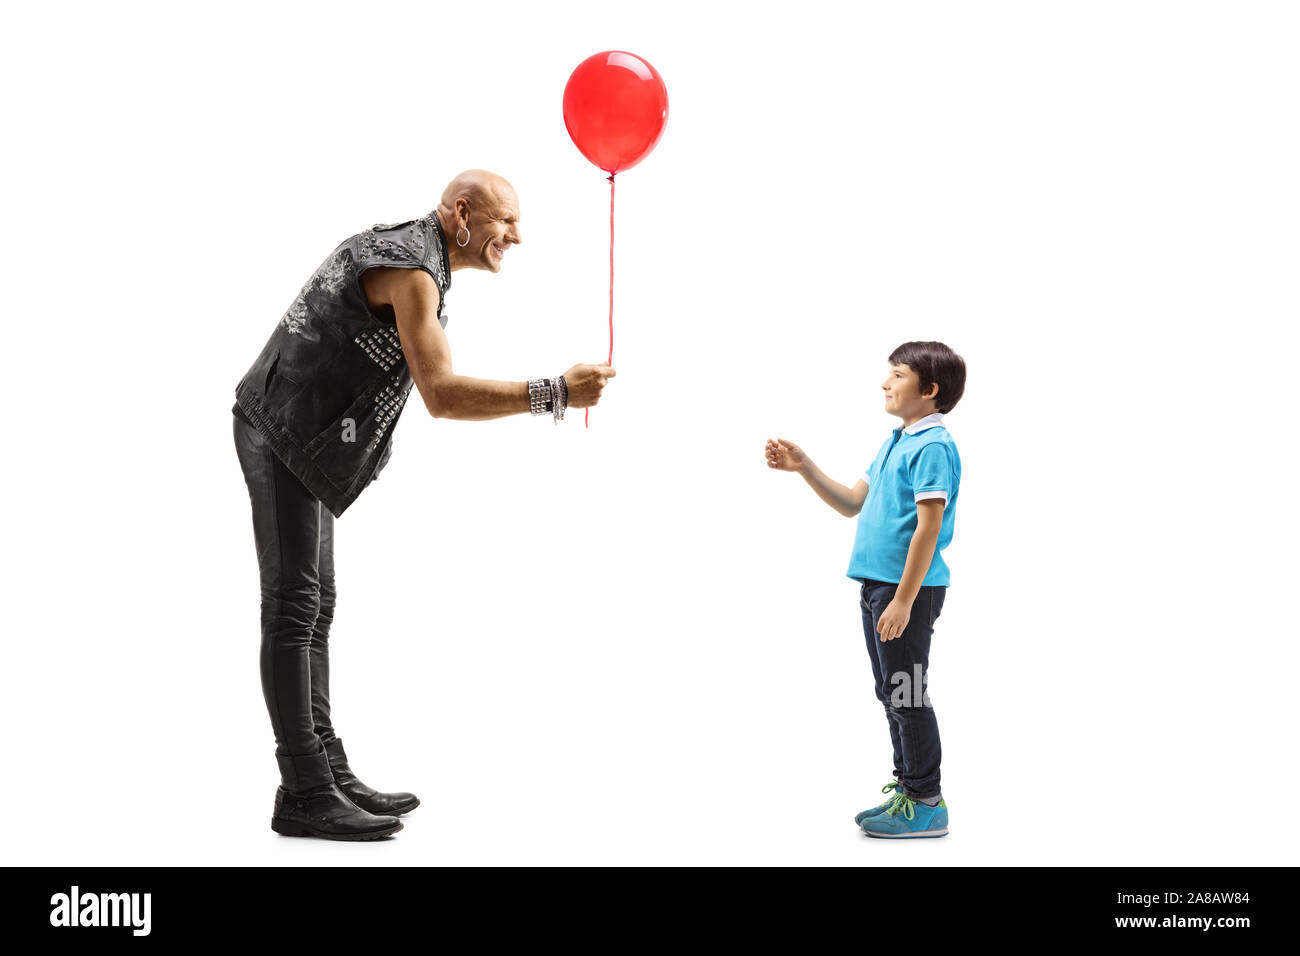 Volle Länge Schuß eines Punkers in Leder Kleidung geben einen roten Ballon zu einem Kind auf weißem Hintergrund Stockfoto